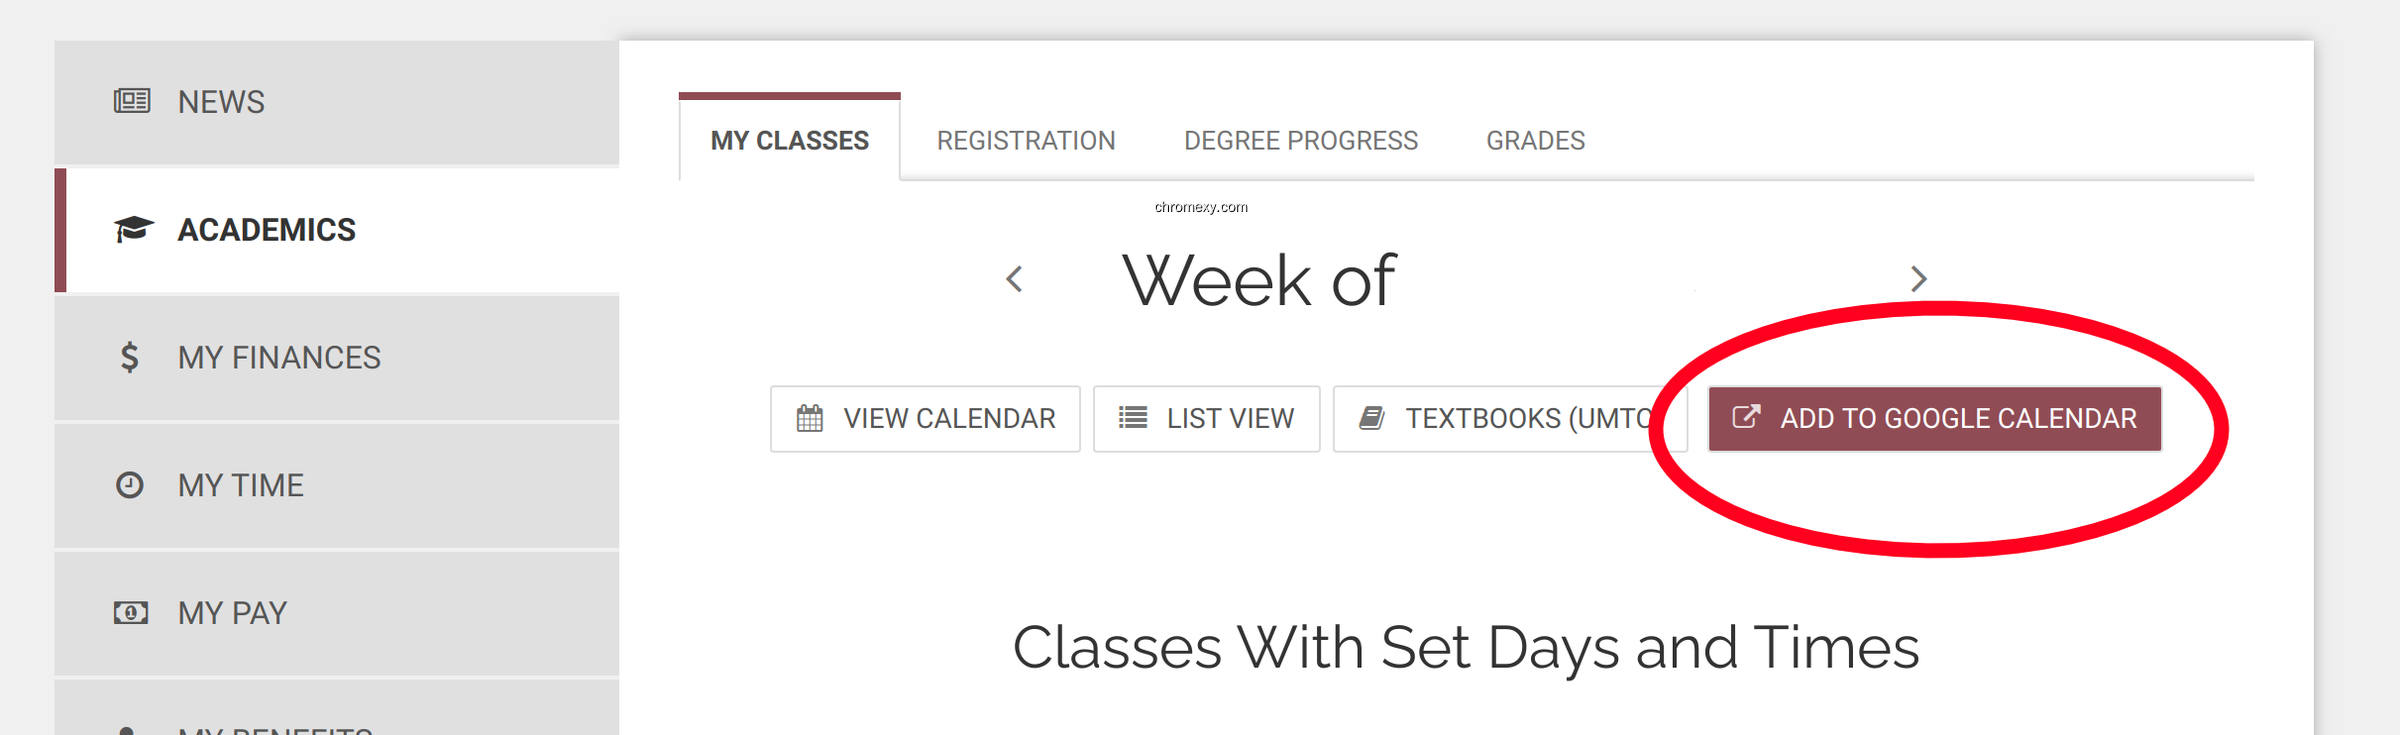 【图】UMN Classes to Calendar(截图 0)